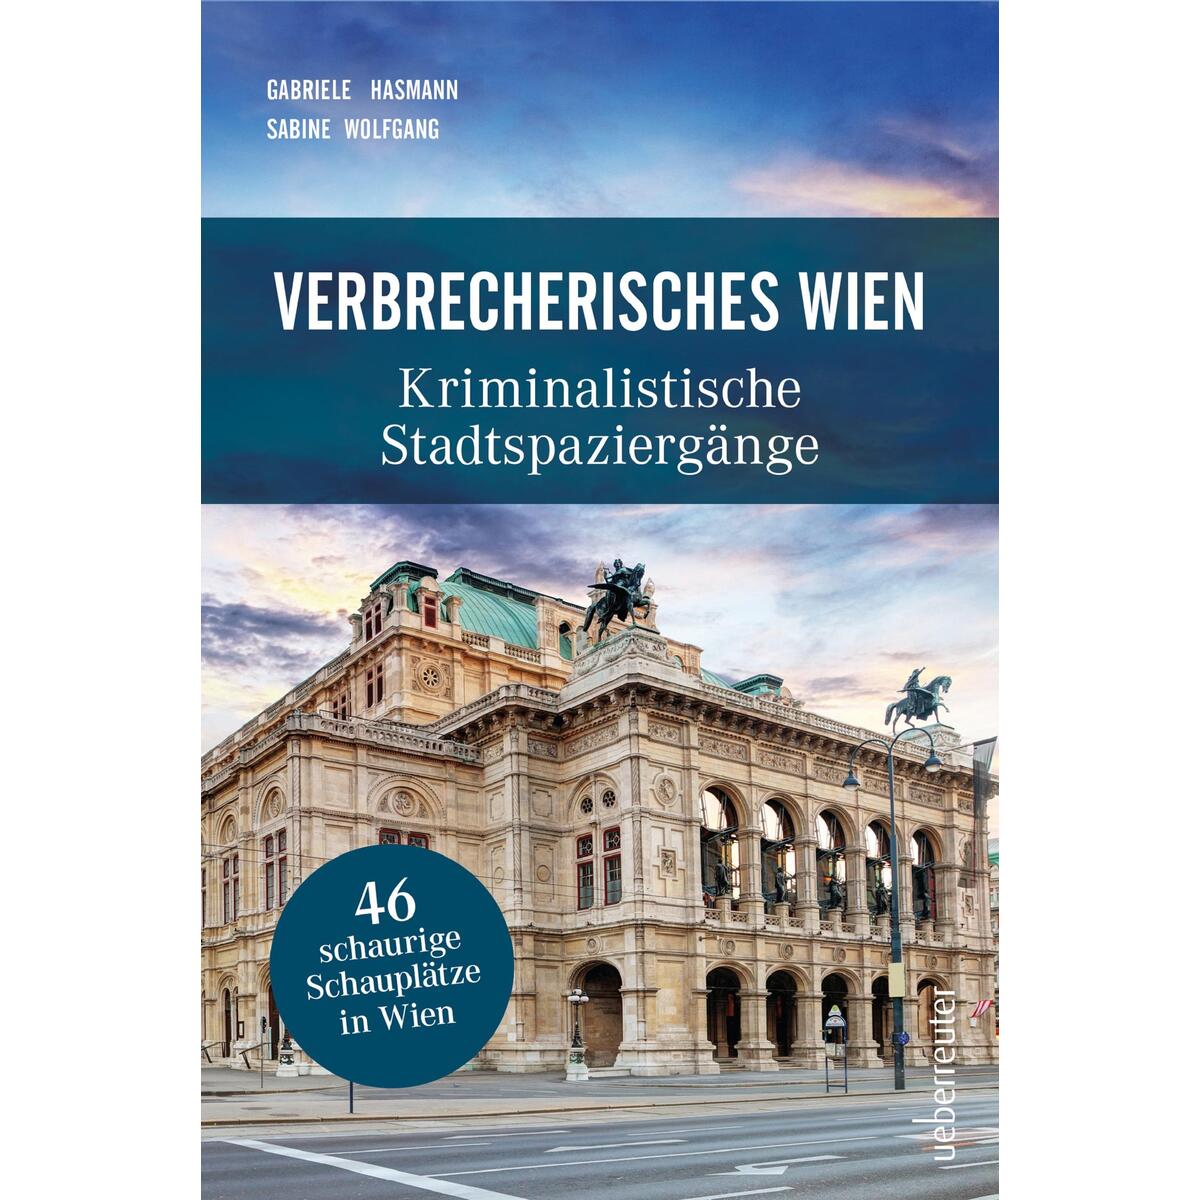 Verbrecherisches Wien von Ueberreuter, Carl Verlag